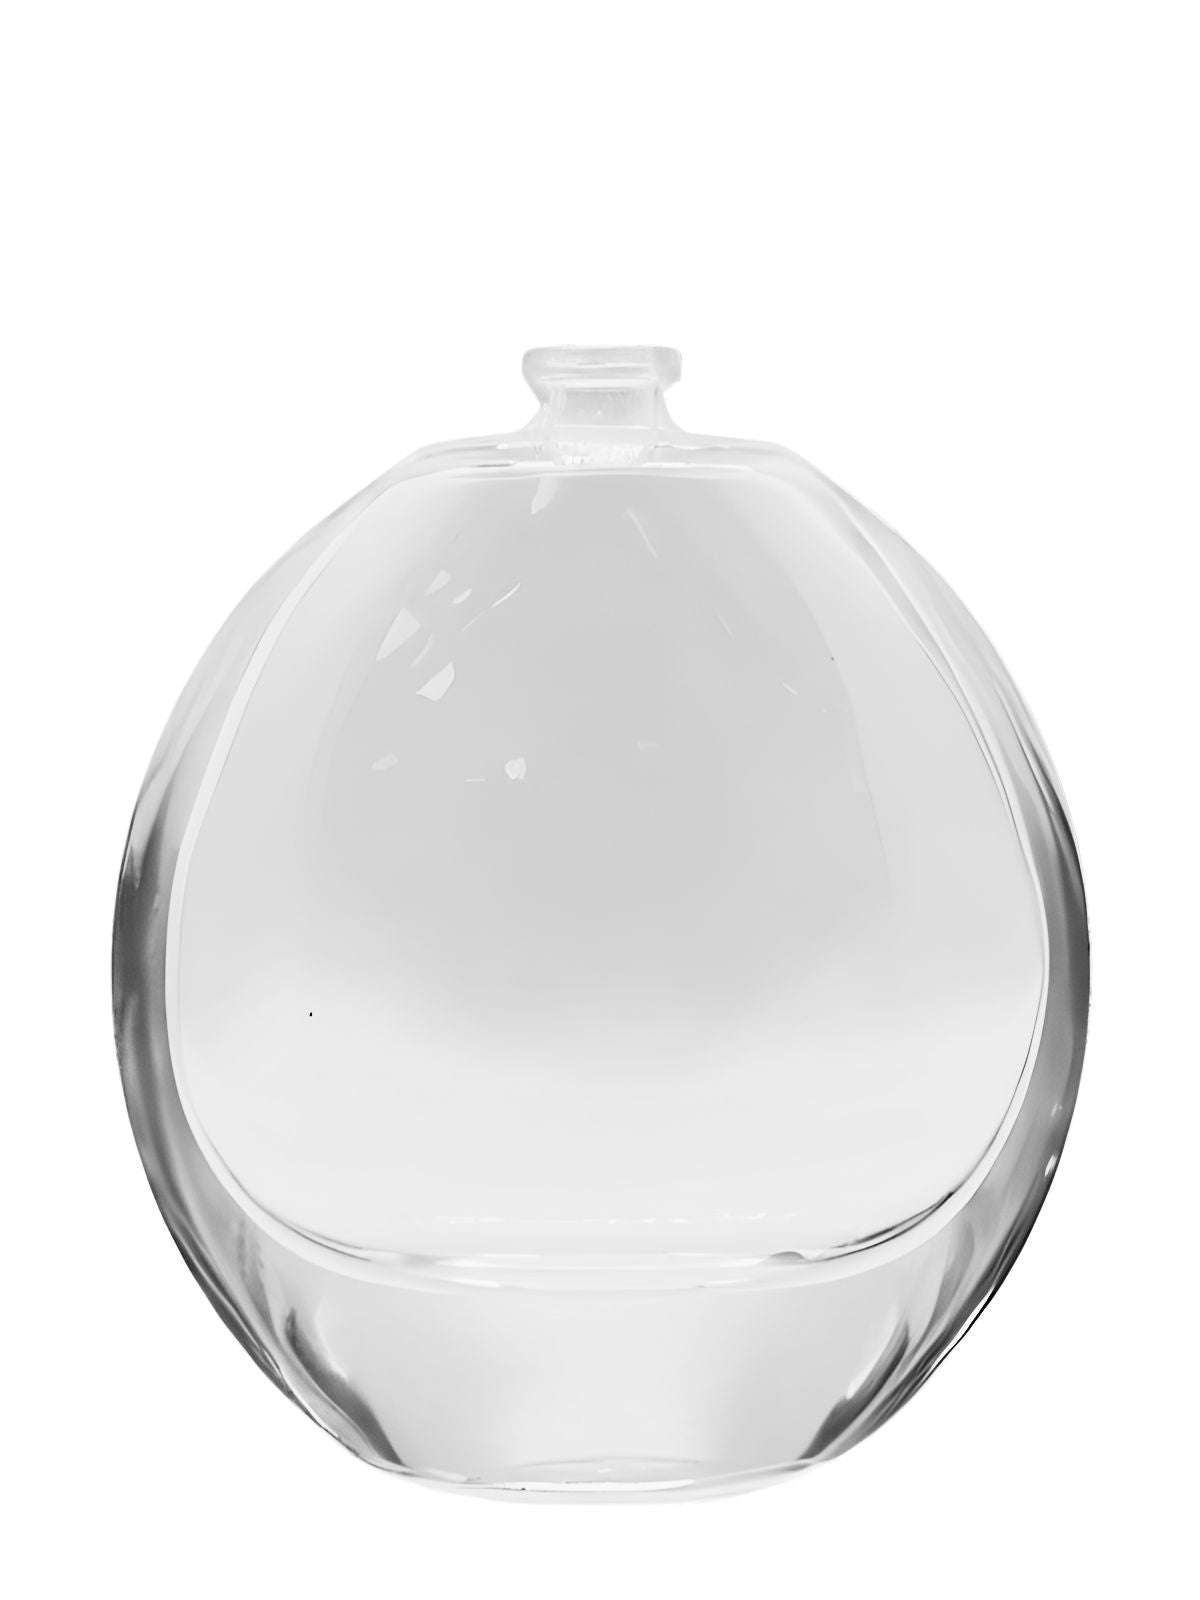 BT004 - 100 ML GLASS PERFUME BOTTLE